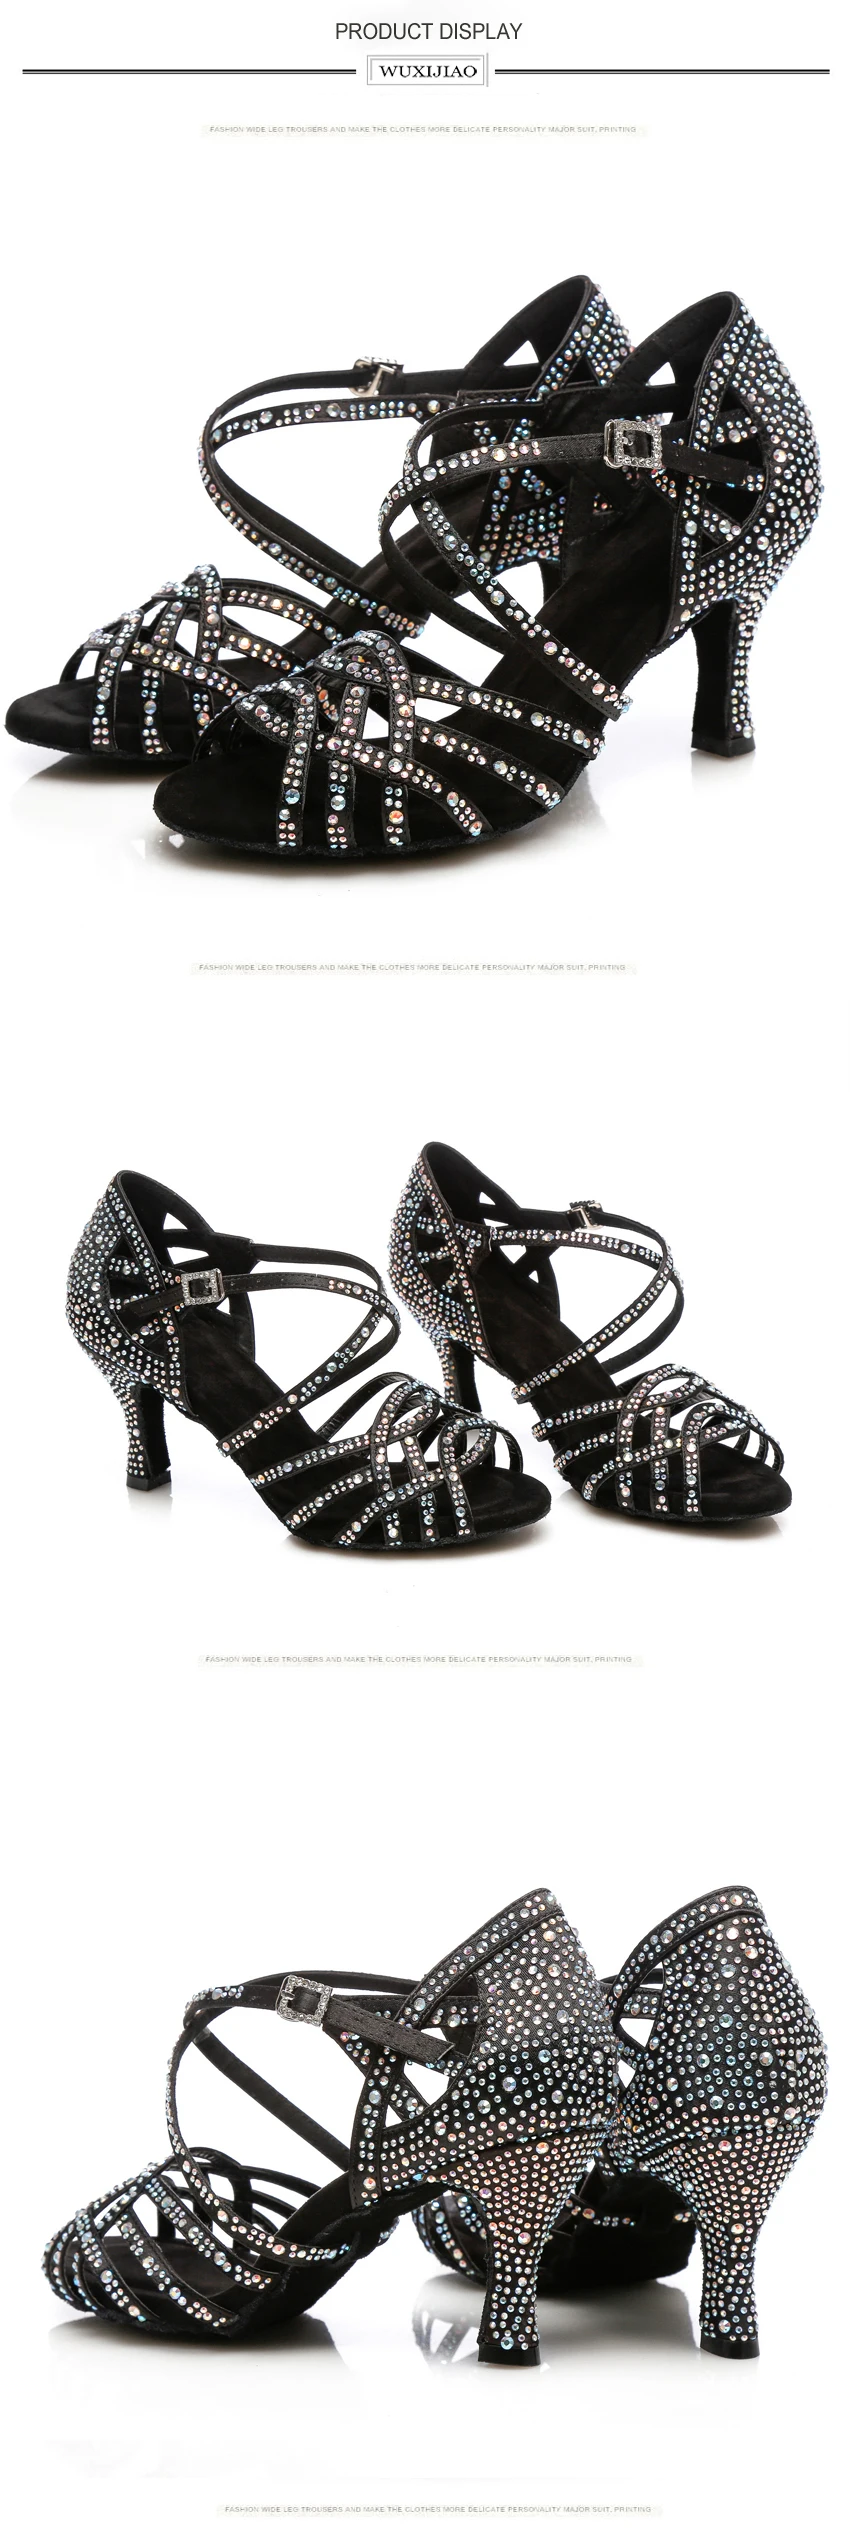 WUXIJIAO Для женщин сальса вечерние бальные туфли Латинская танцевальная обувь, большие и маленькие размеры Стразы блестящие сандалии кожи сатин кубинский каблук 9 см